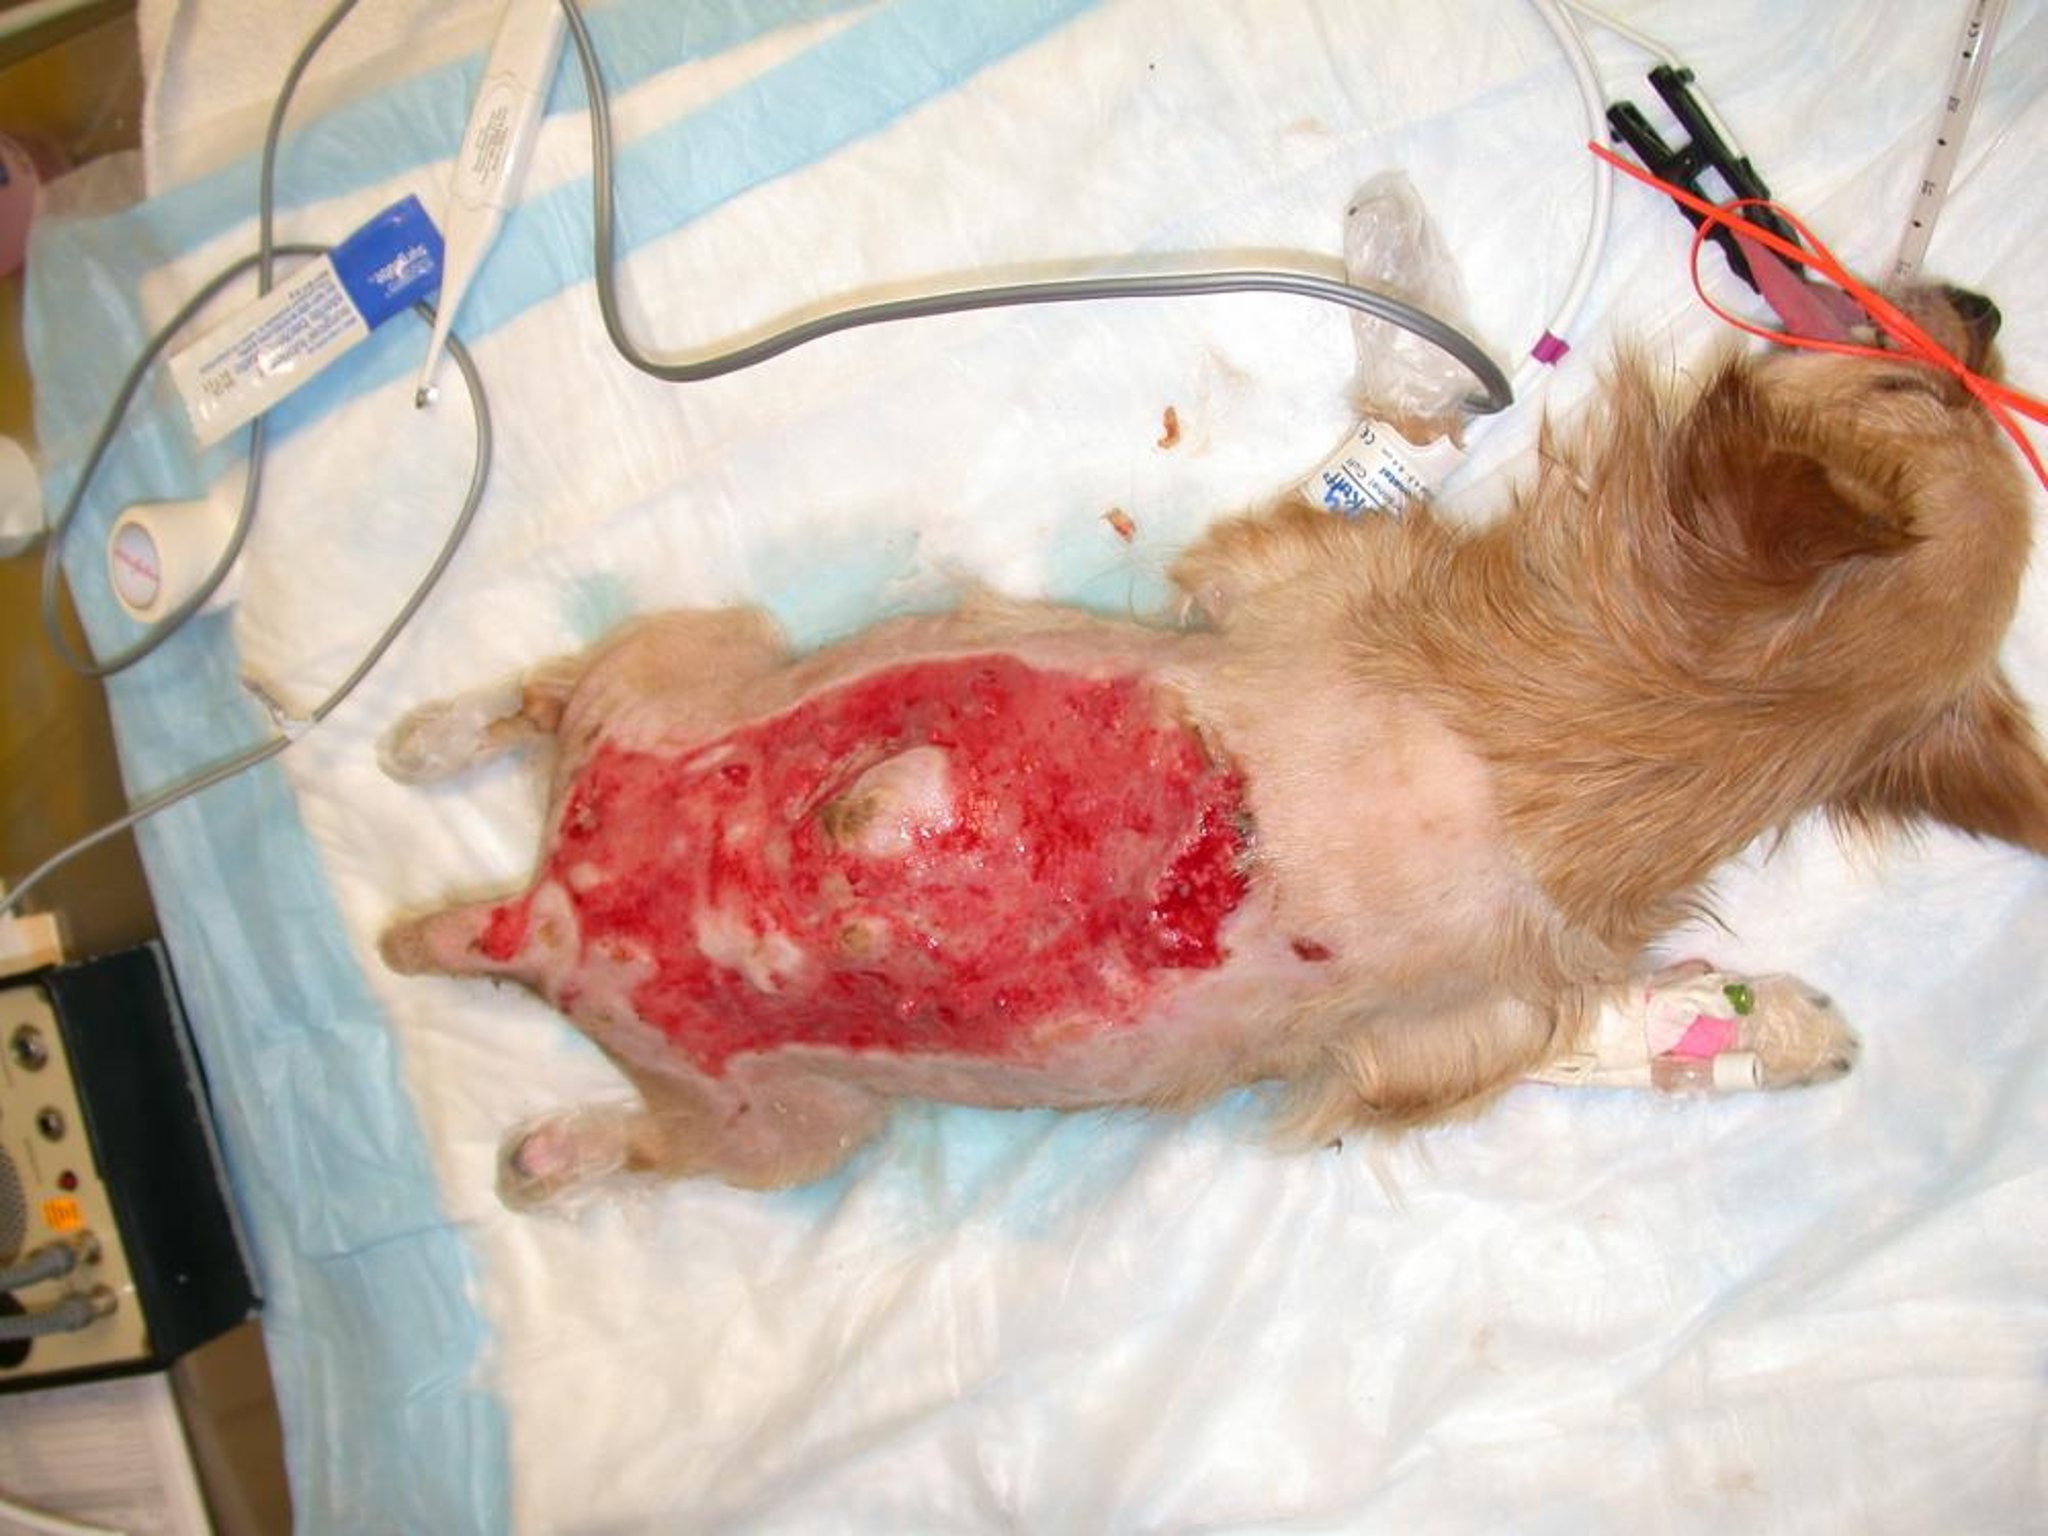 Thermal burn, after debridement, dog